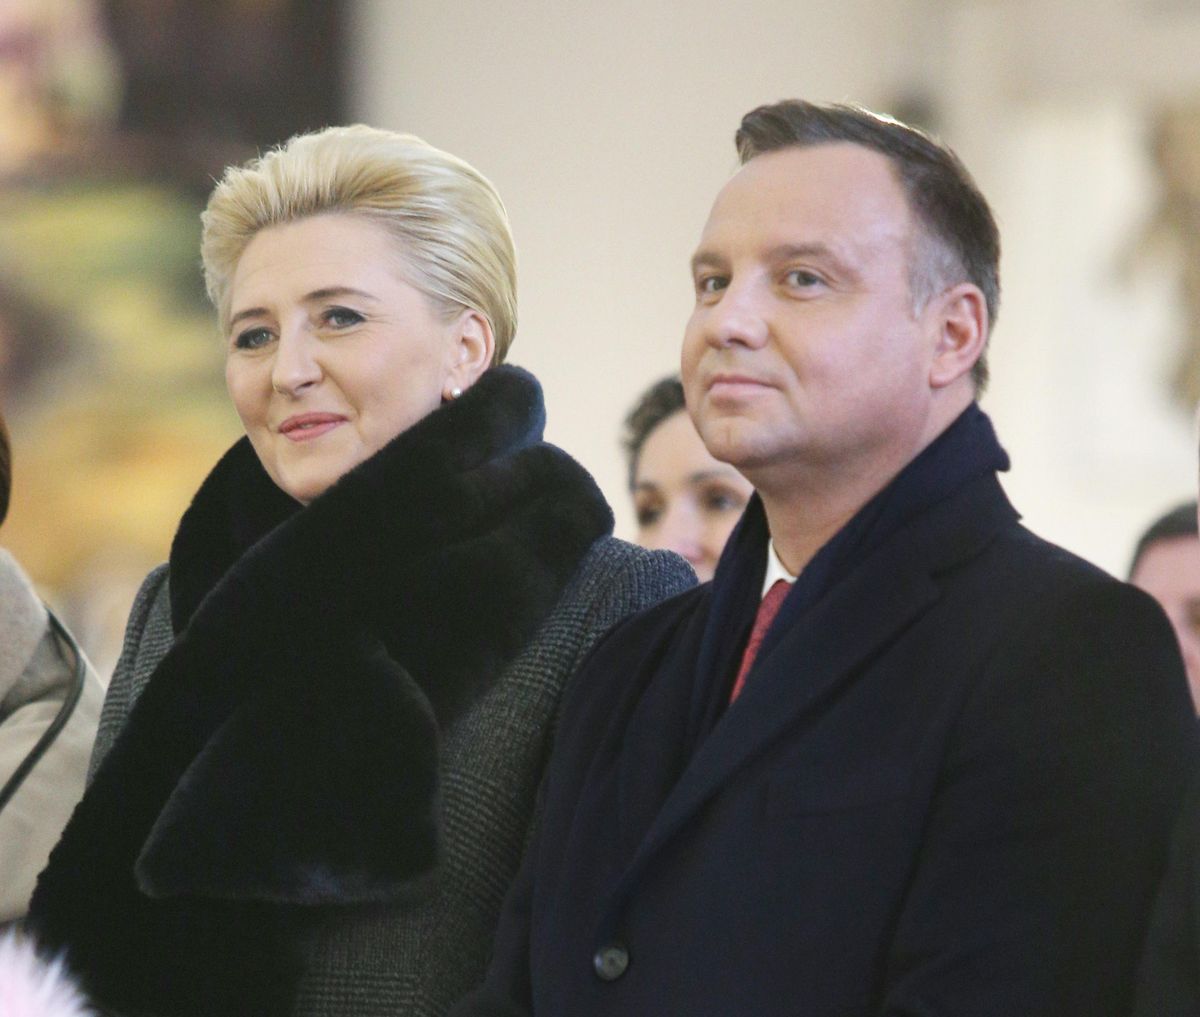 Prezydent Andrzej Duda zaskoczył swoją małżonkę. "Było wesoło"